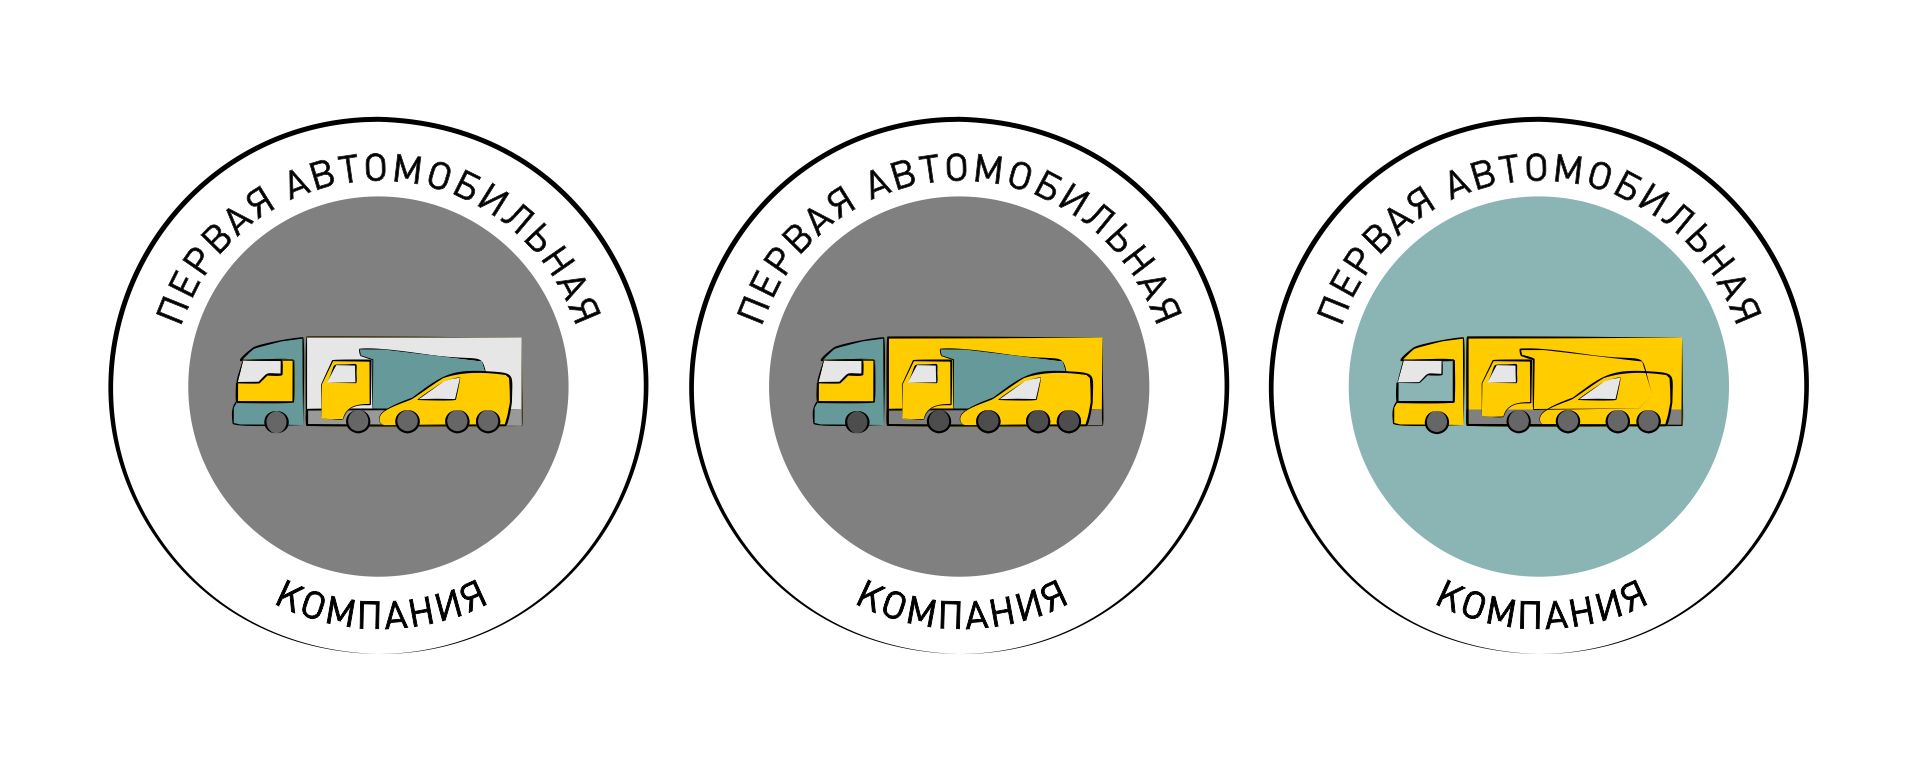 Логотип для Первая автомобильная компания (ПАК) - дизайнер Larlisa